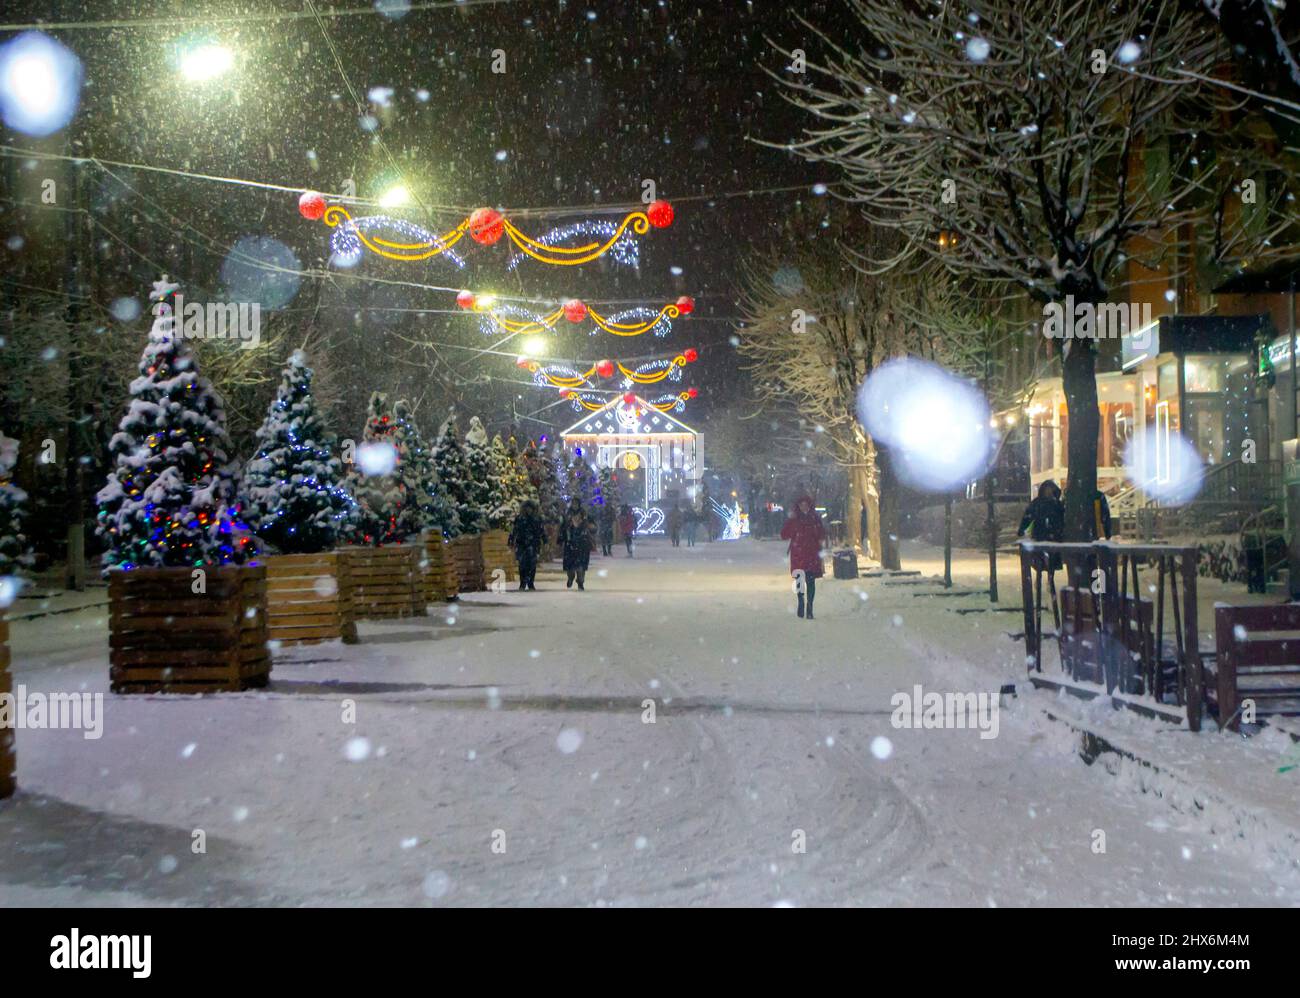 Rue de ville enneigée avec arbres de Noël et décoration lumineuse Banque D'Images